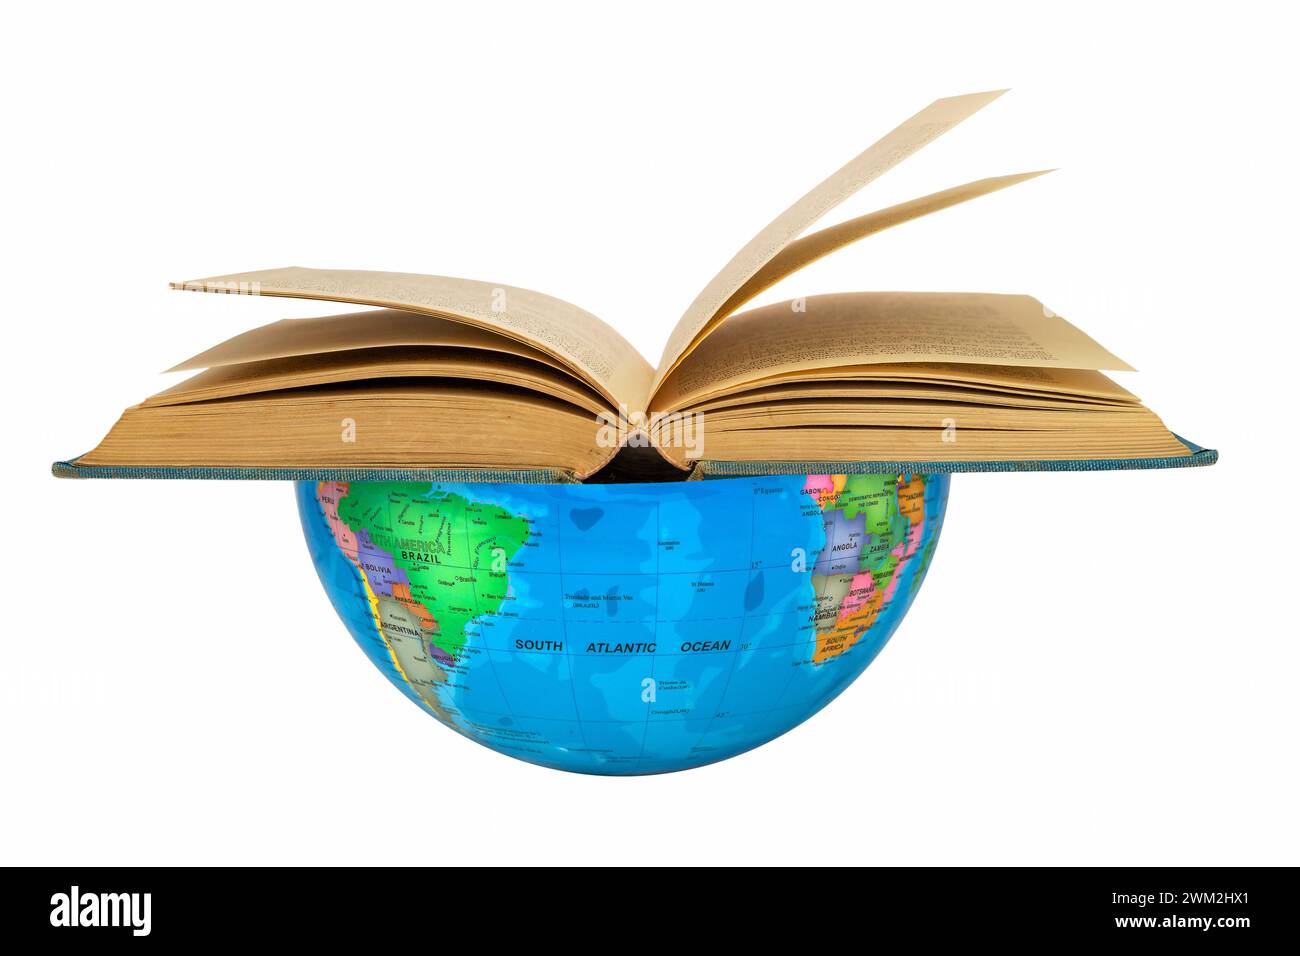 Hemisferio Sur con un libro abierto donde América y África están: Concepto de lectura. La tierra apoya la lectura global como un atril. Foto de stock